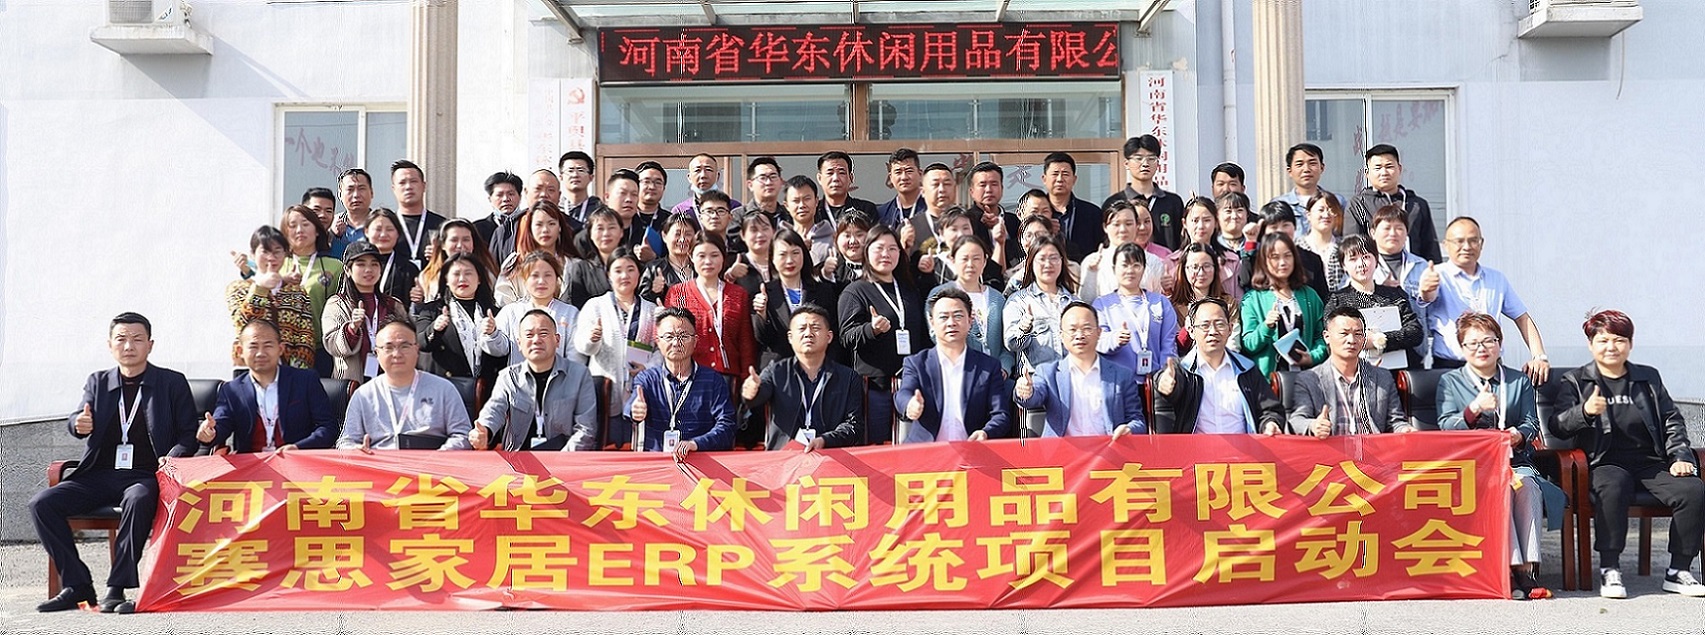 祝贺河南省户外家具头部企业华东&赛思ERP数字化项目正式启动